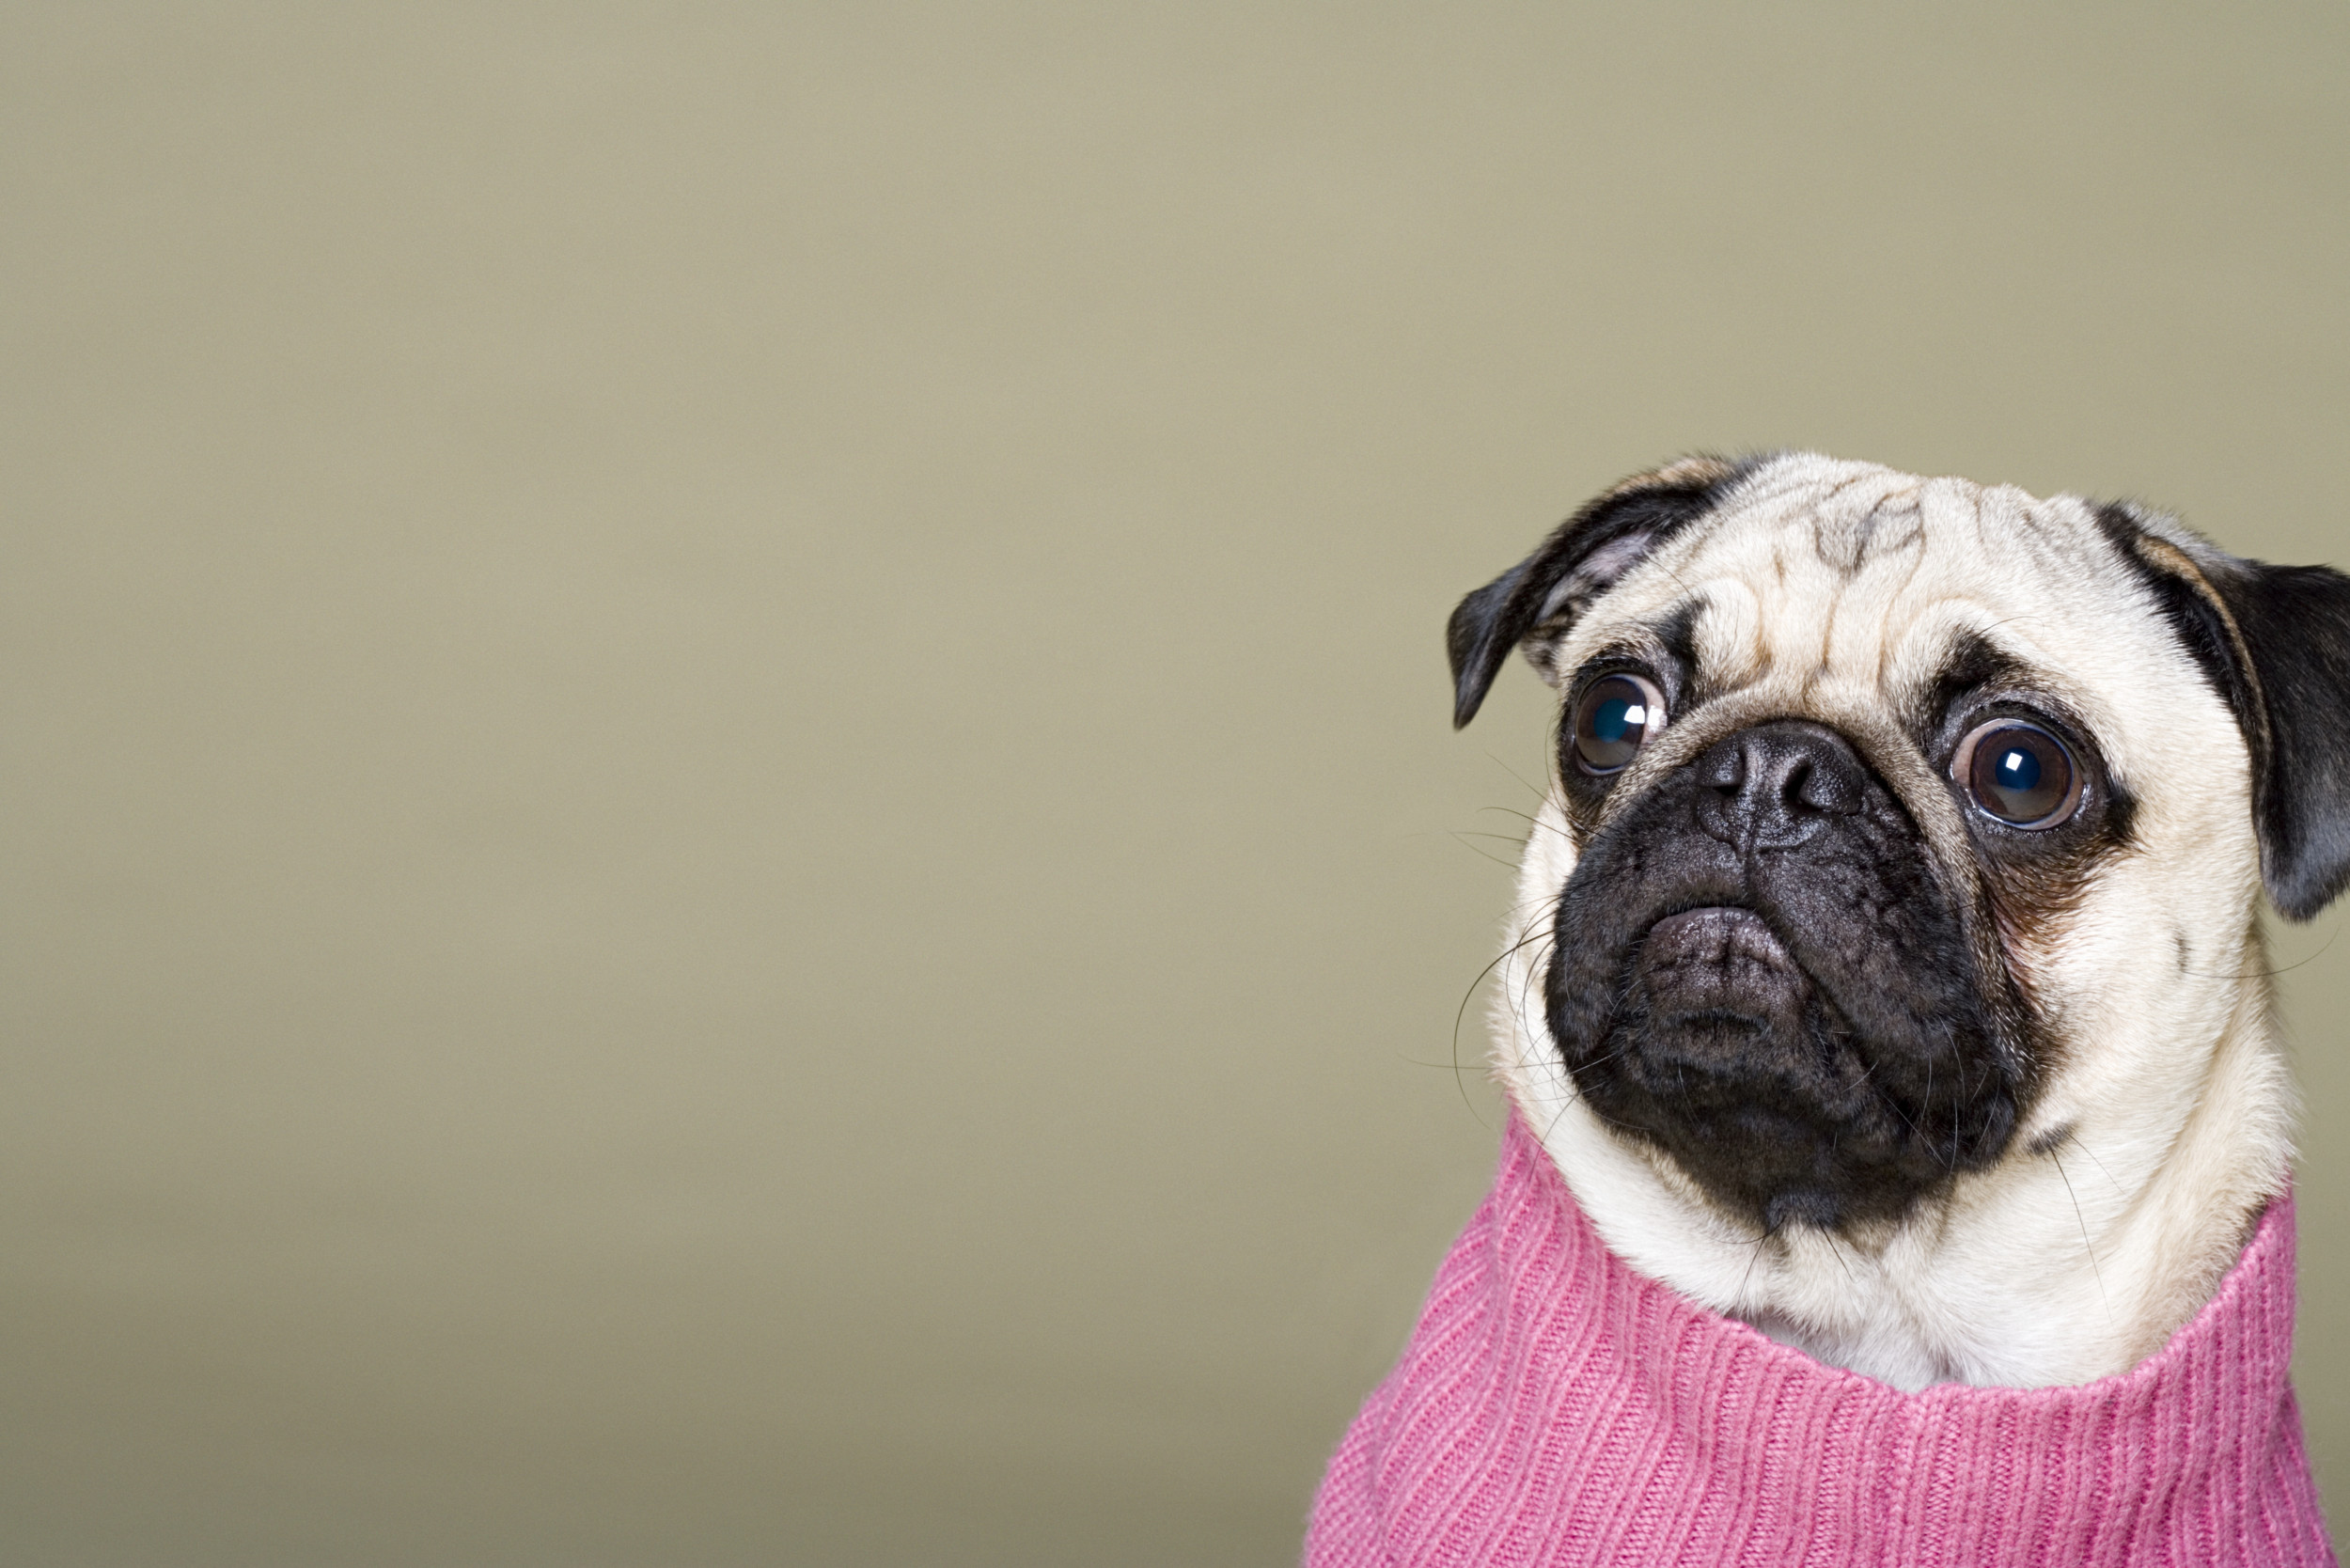 Cute pug in pink sweater